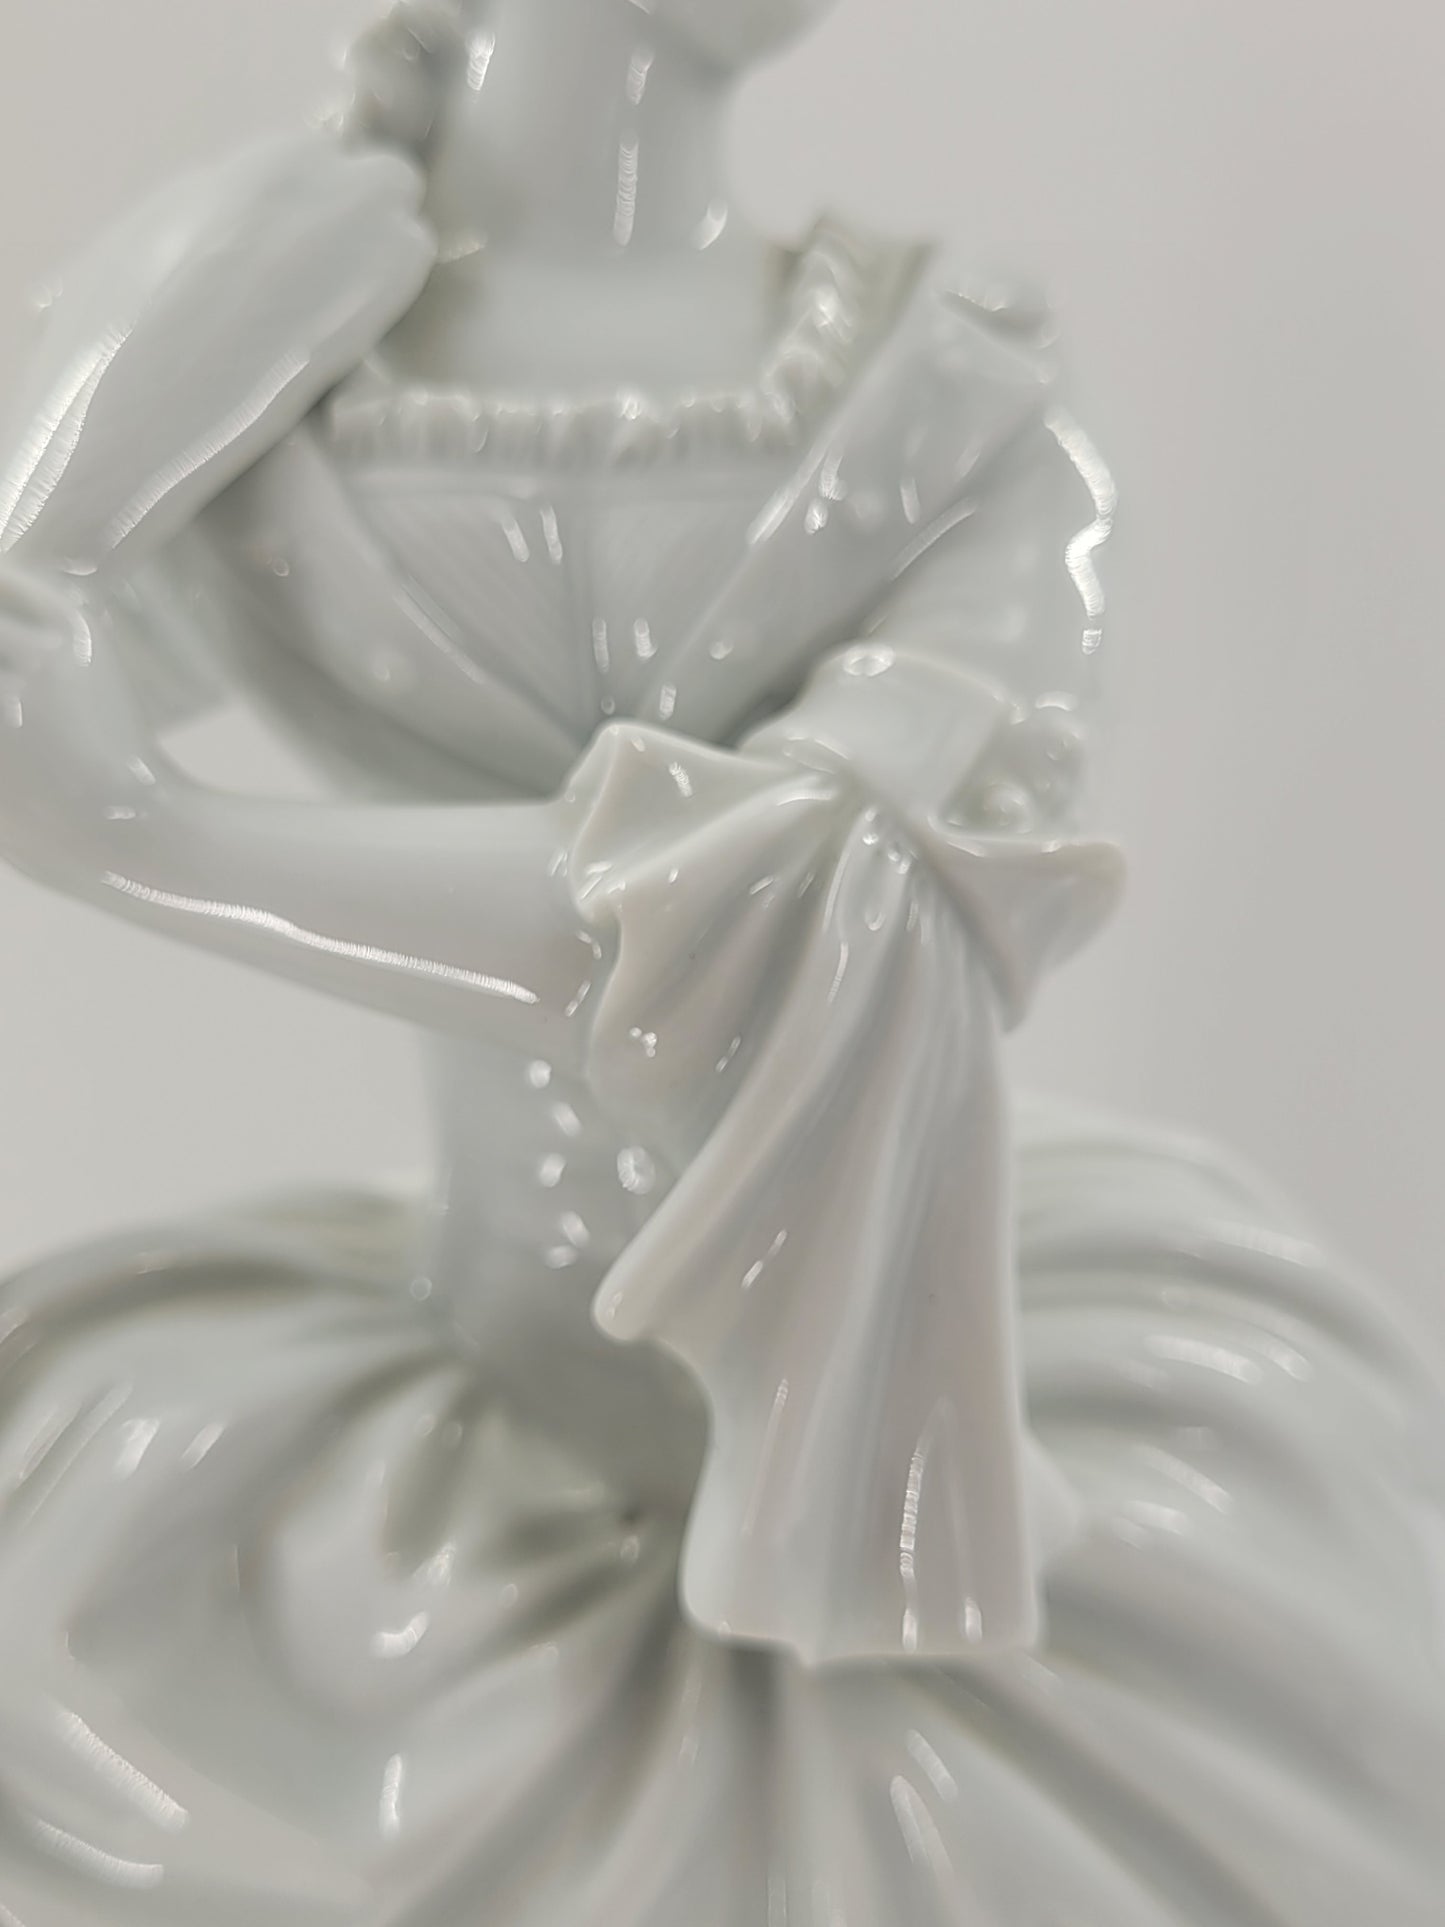 Original Dresdner Porzellan Figur, Dame im Tüllkleid mit Fächer